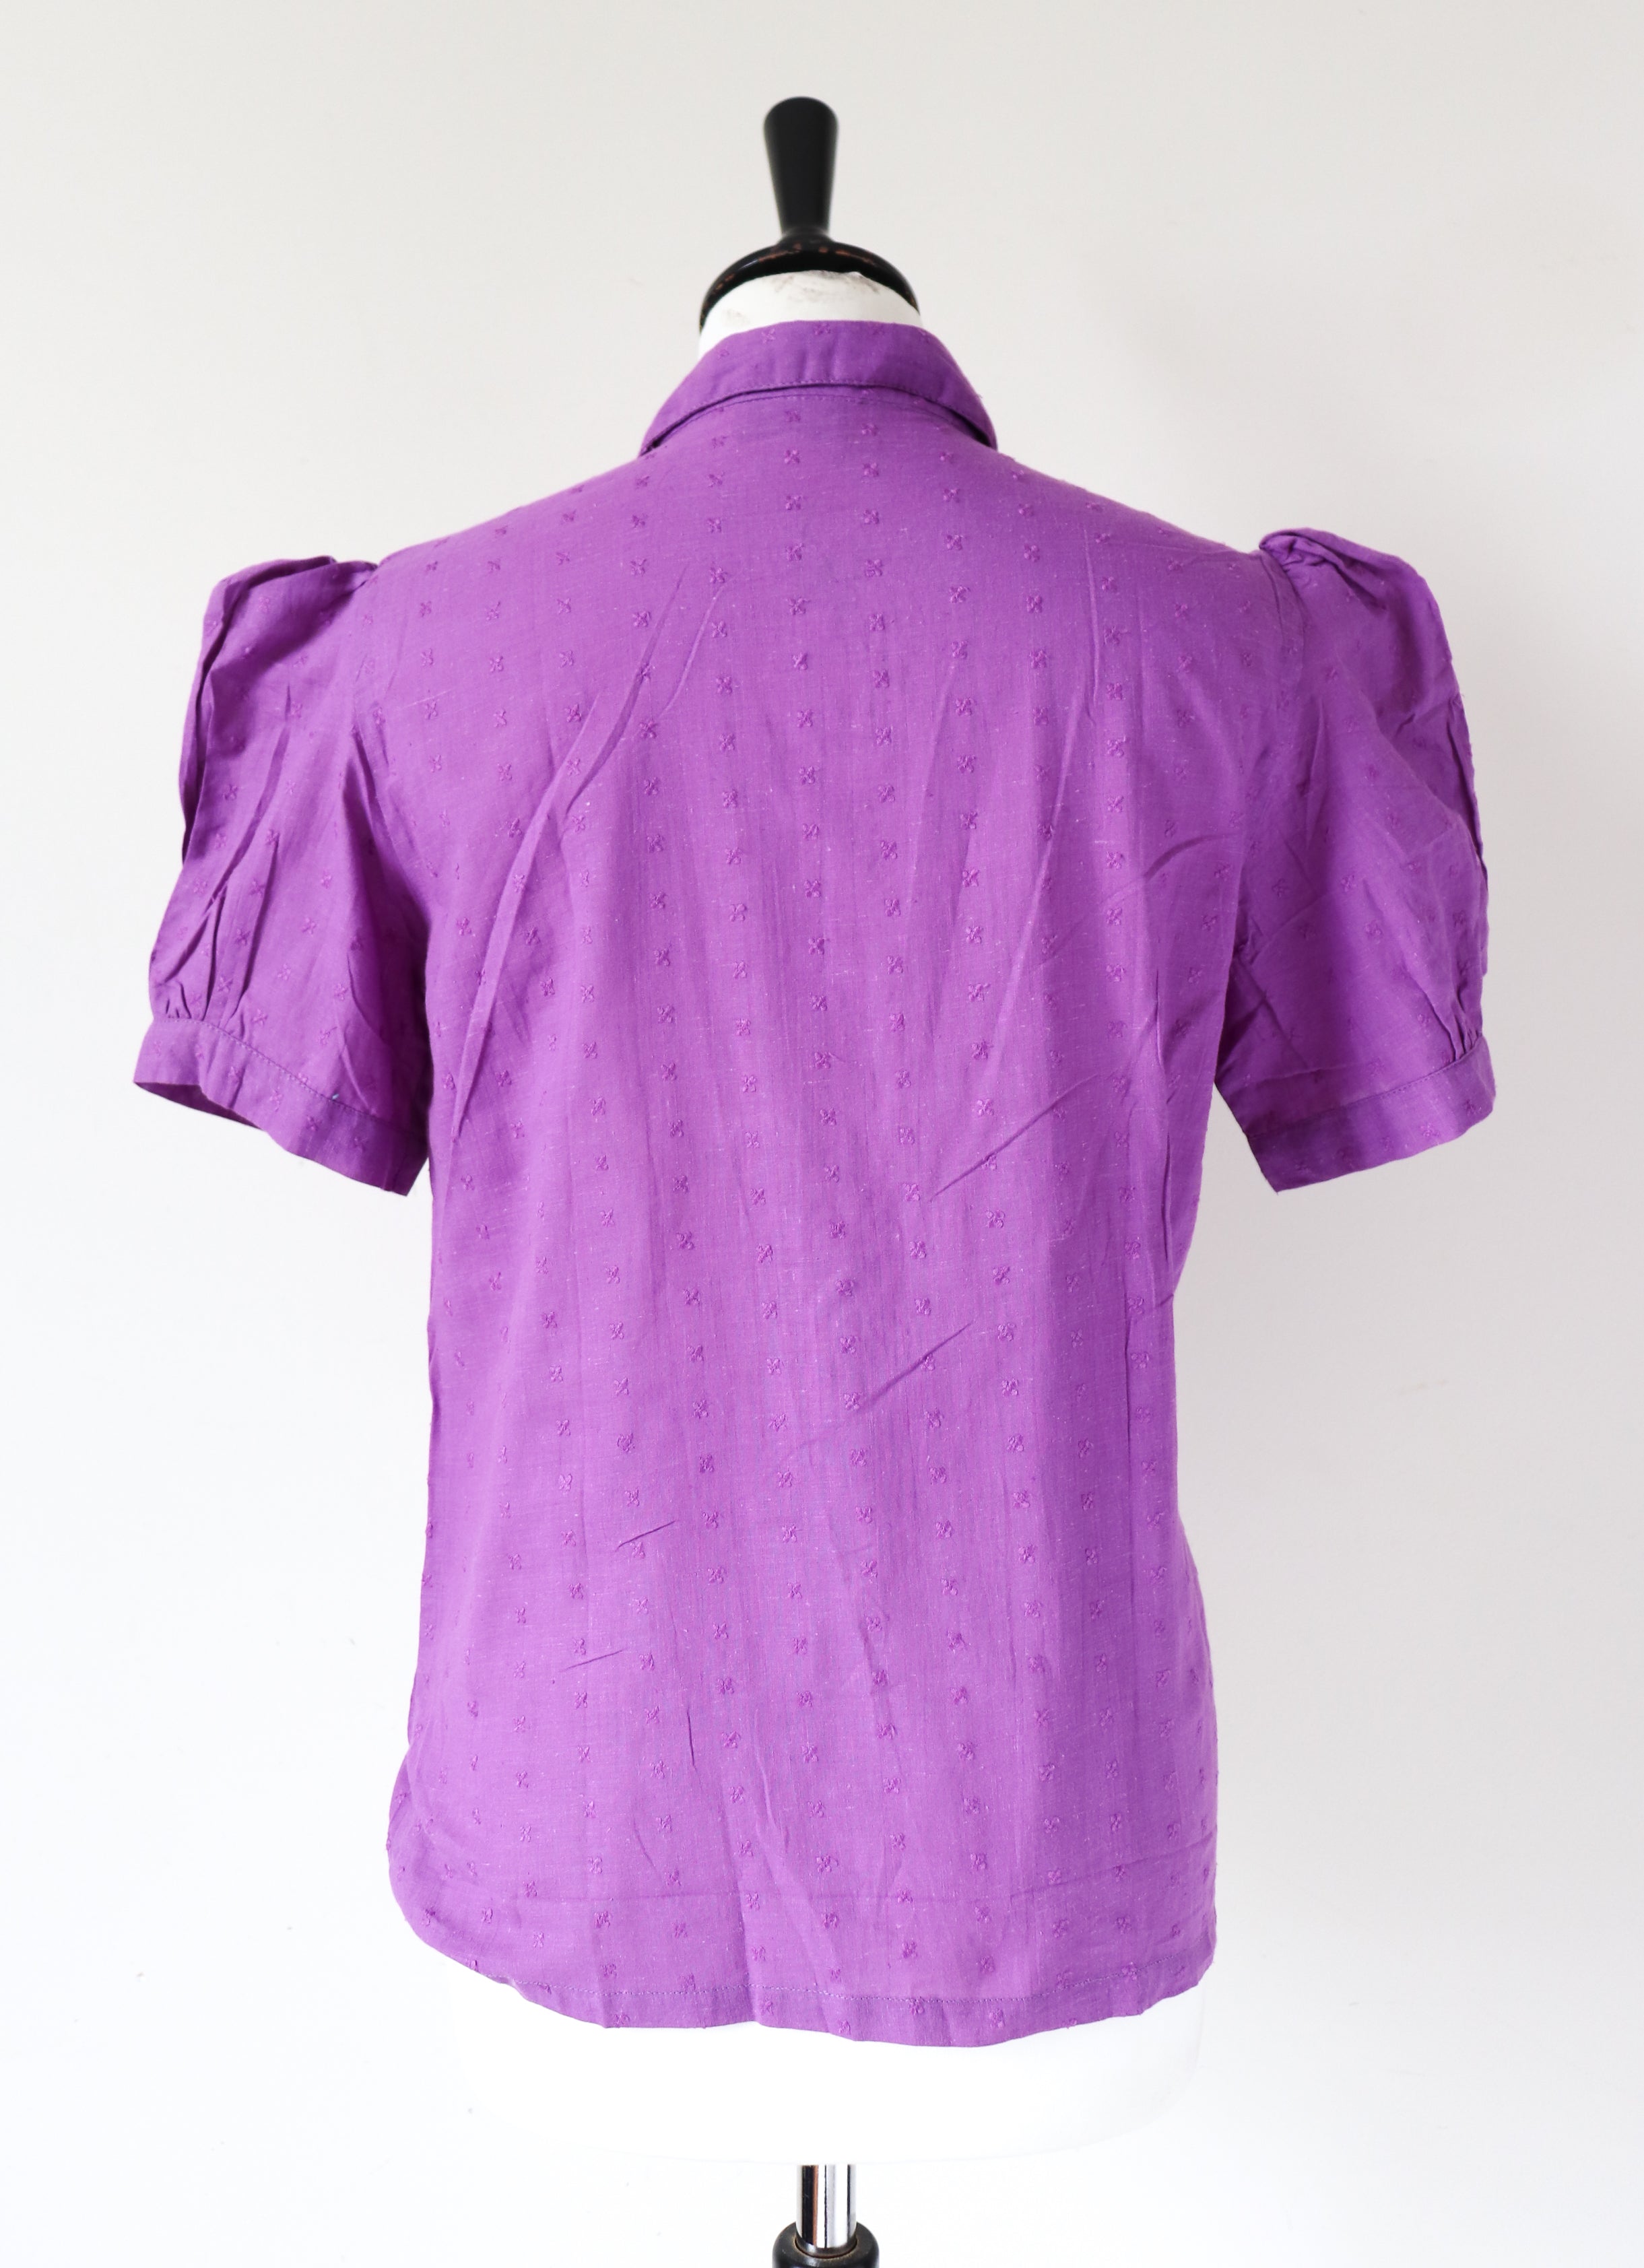 Vintage Cotton Blouse - Indian Cotton 1980s Deadstock - Purple - Fit S / UK 10